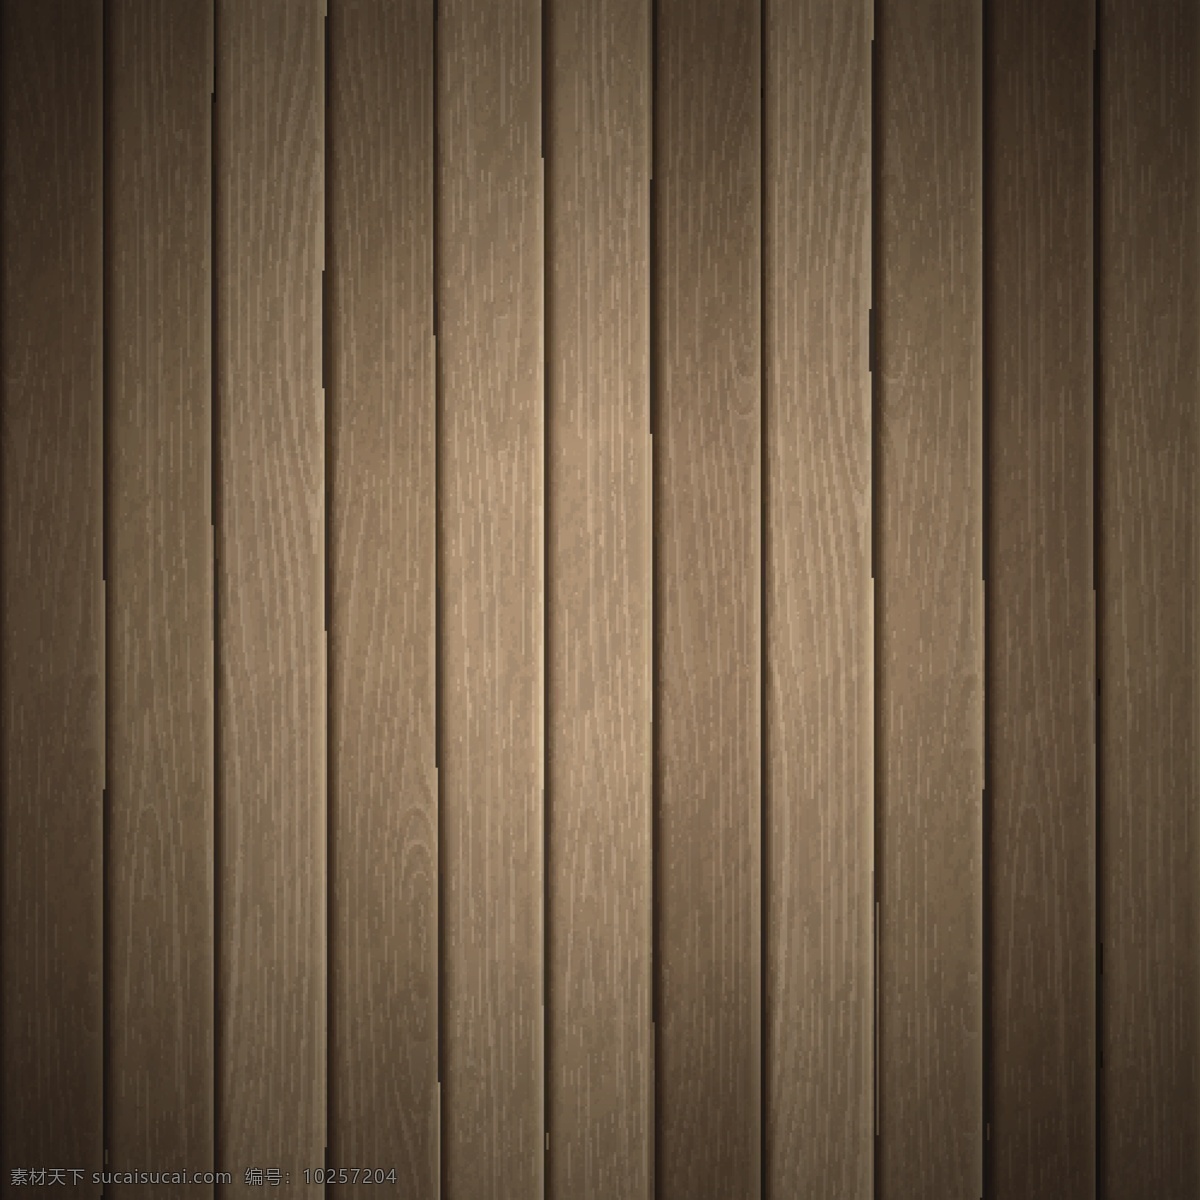 木板 木纹 条纹 背景 矢量 木质 木 木头 材质 卡片 背景素材